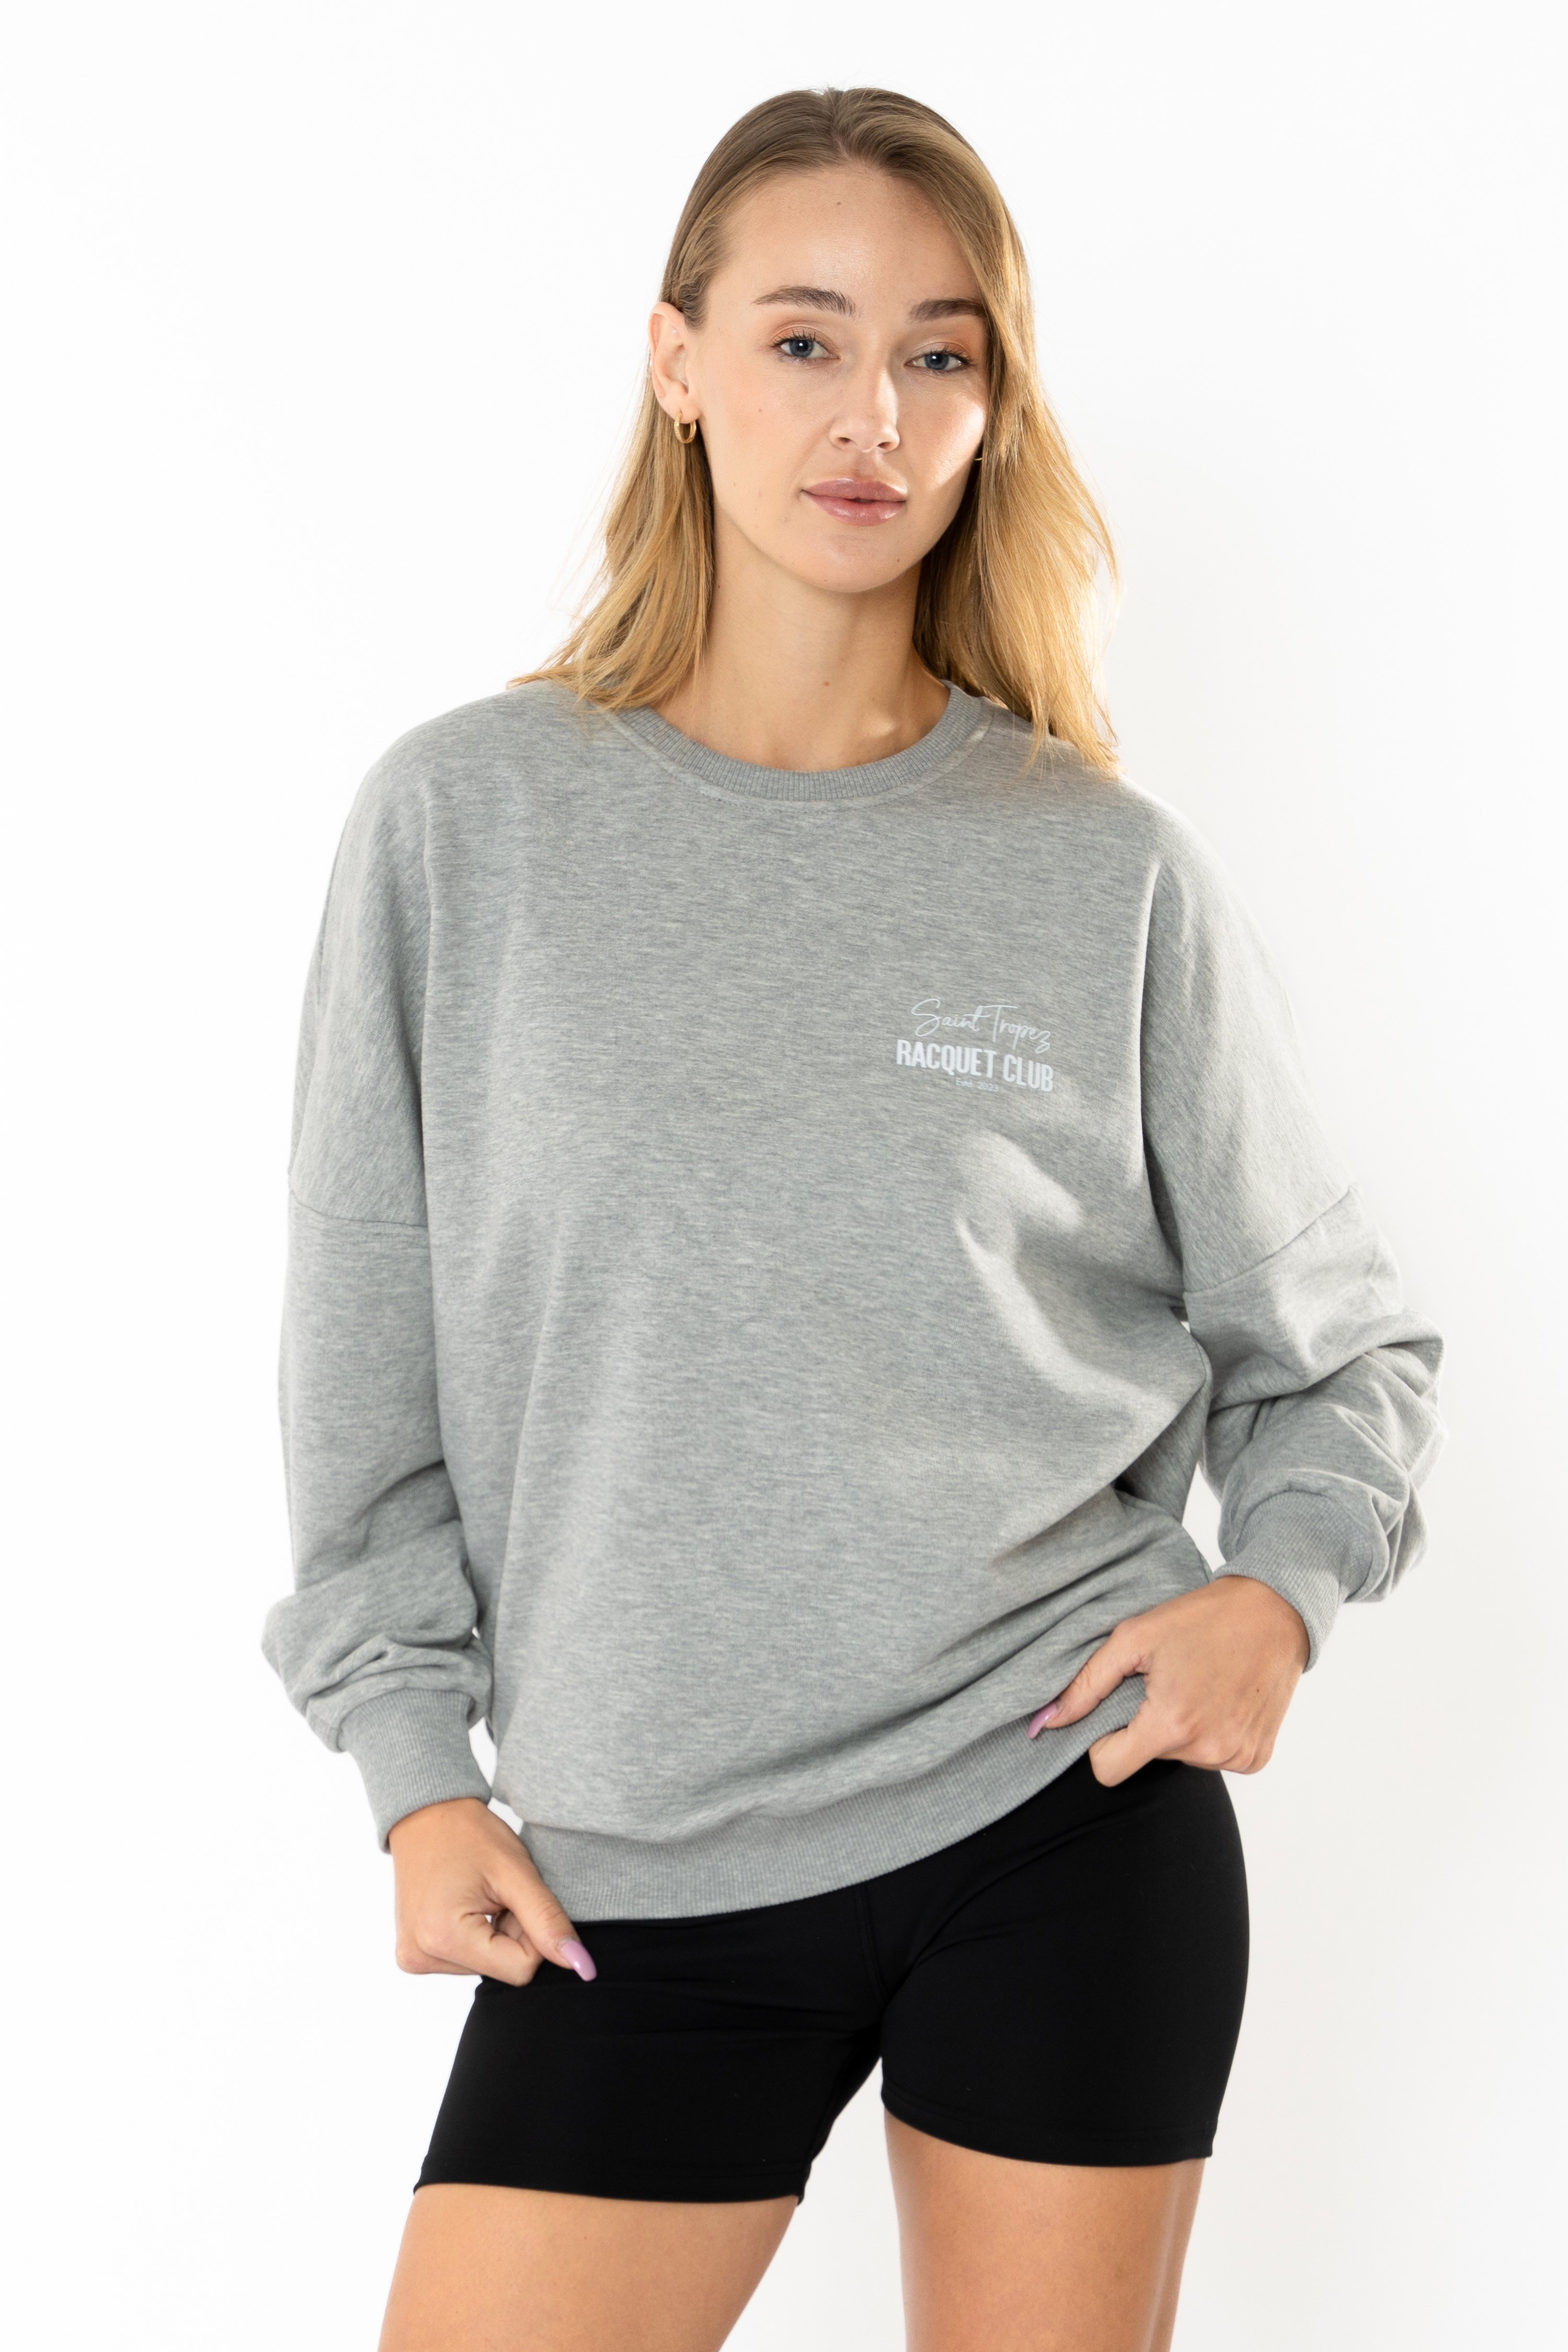 Racquet Lover Oversize Sweatshirt Kadın - Gri